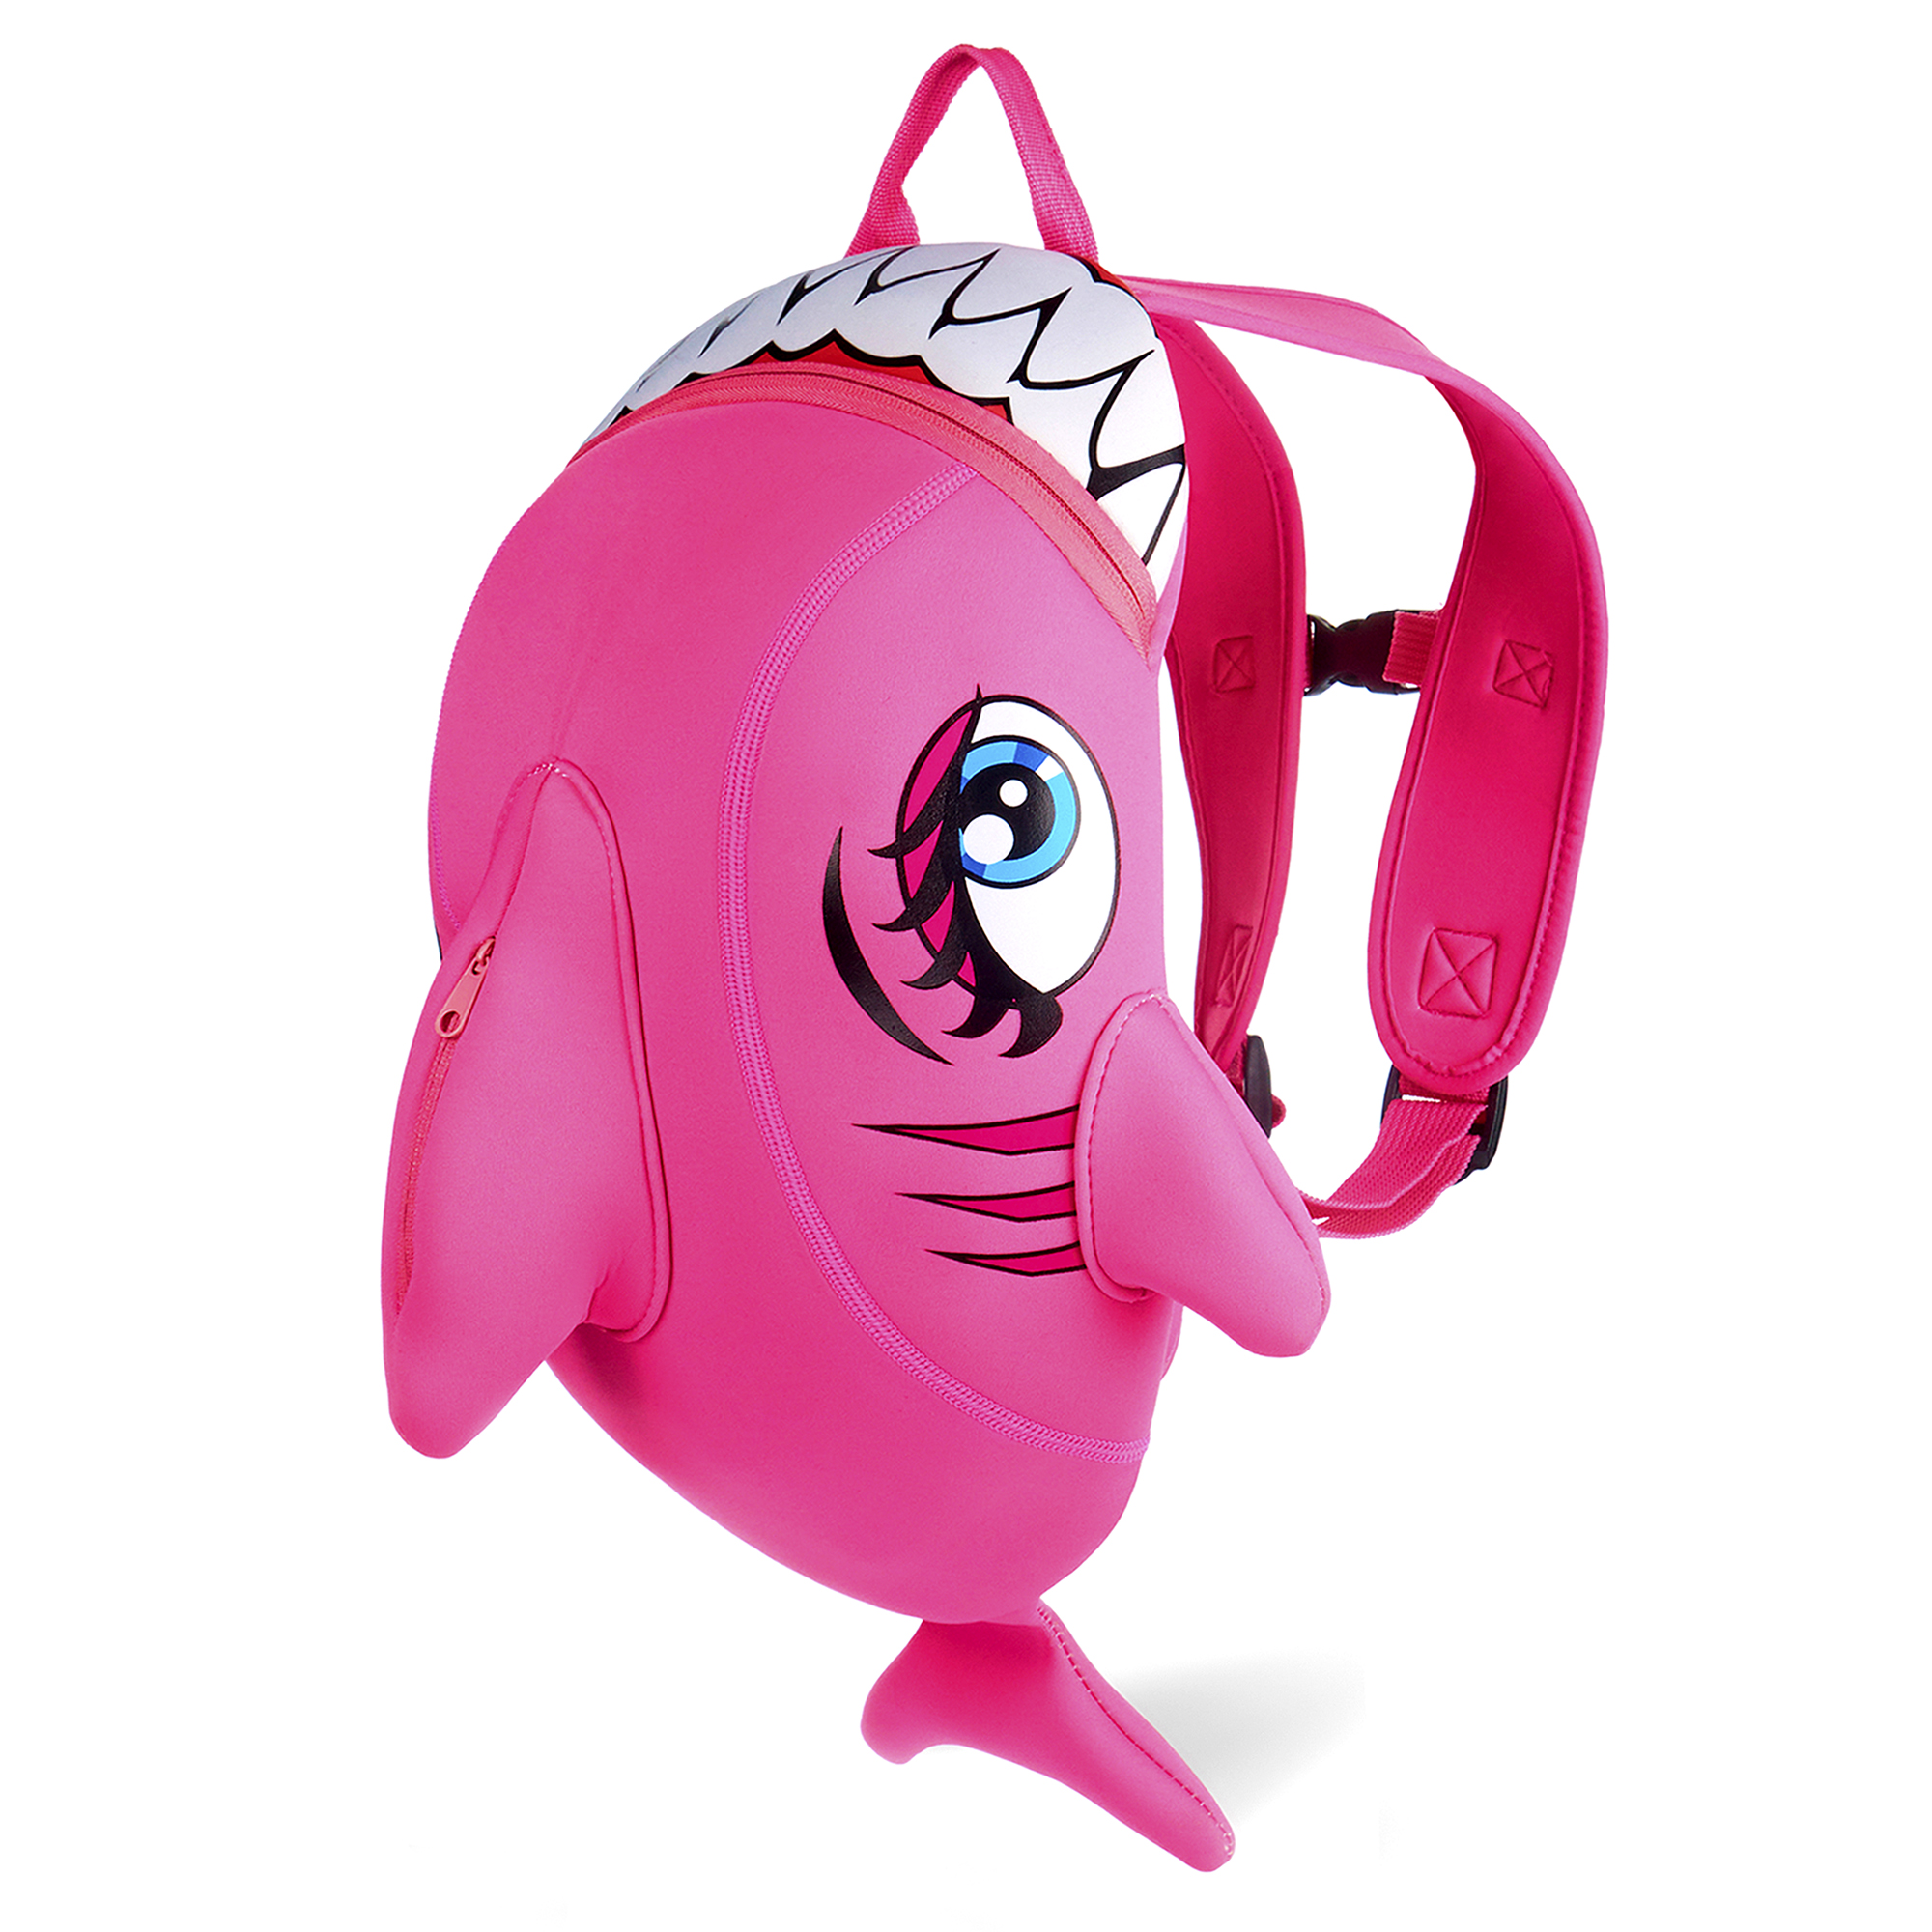 Billede af Crazy Safety pink haj rygsæk til børn Slidstærk neoprentaske med mange funktioner. Testet og godkendt til børn